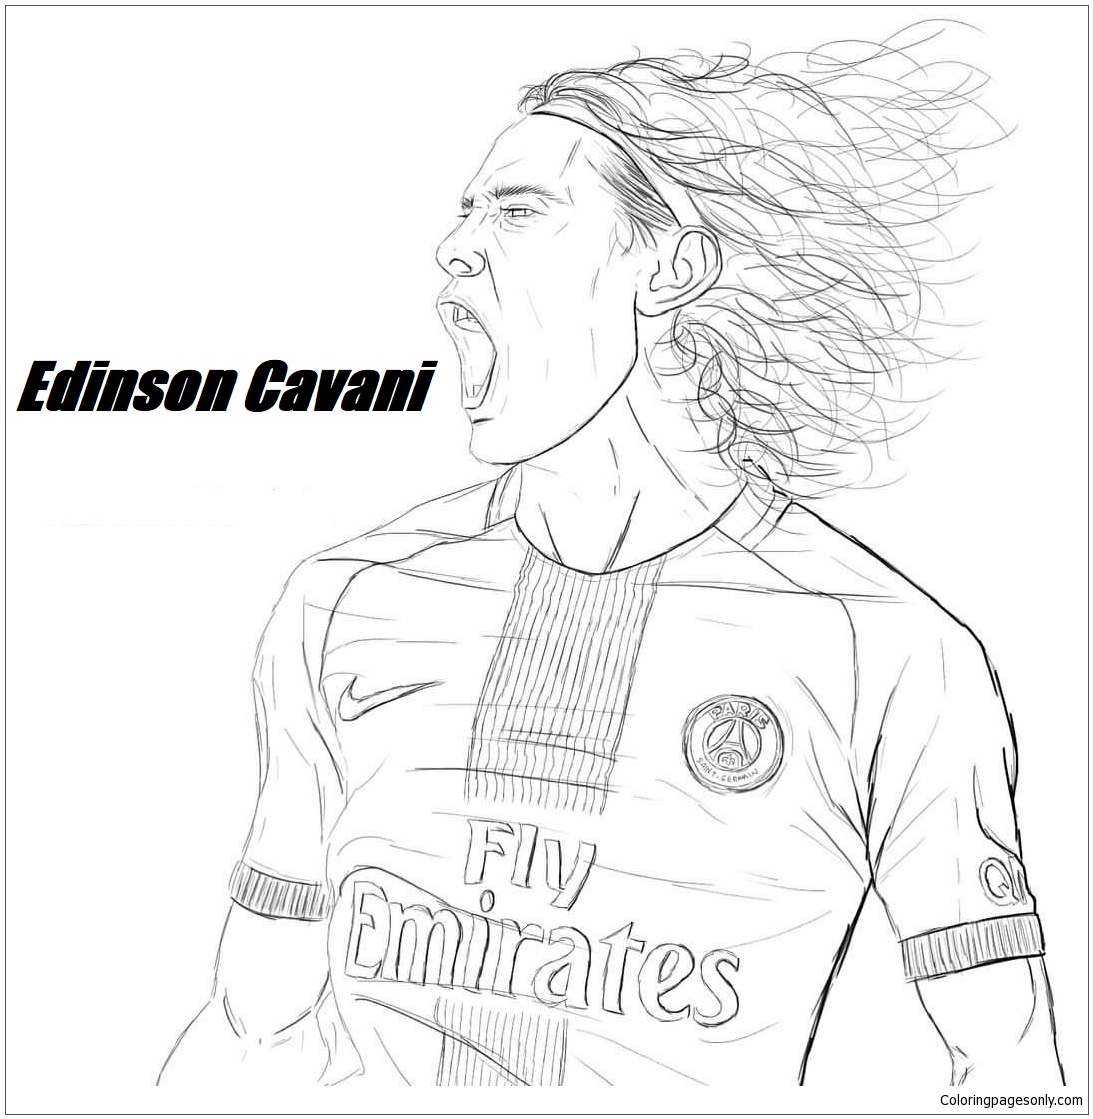 Edinson Cavani-image 5 Coloring Page